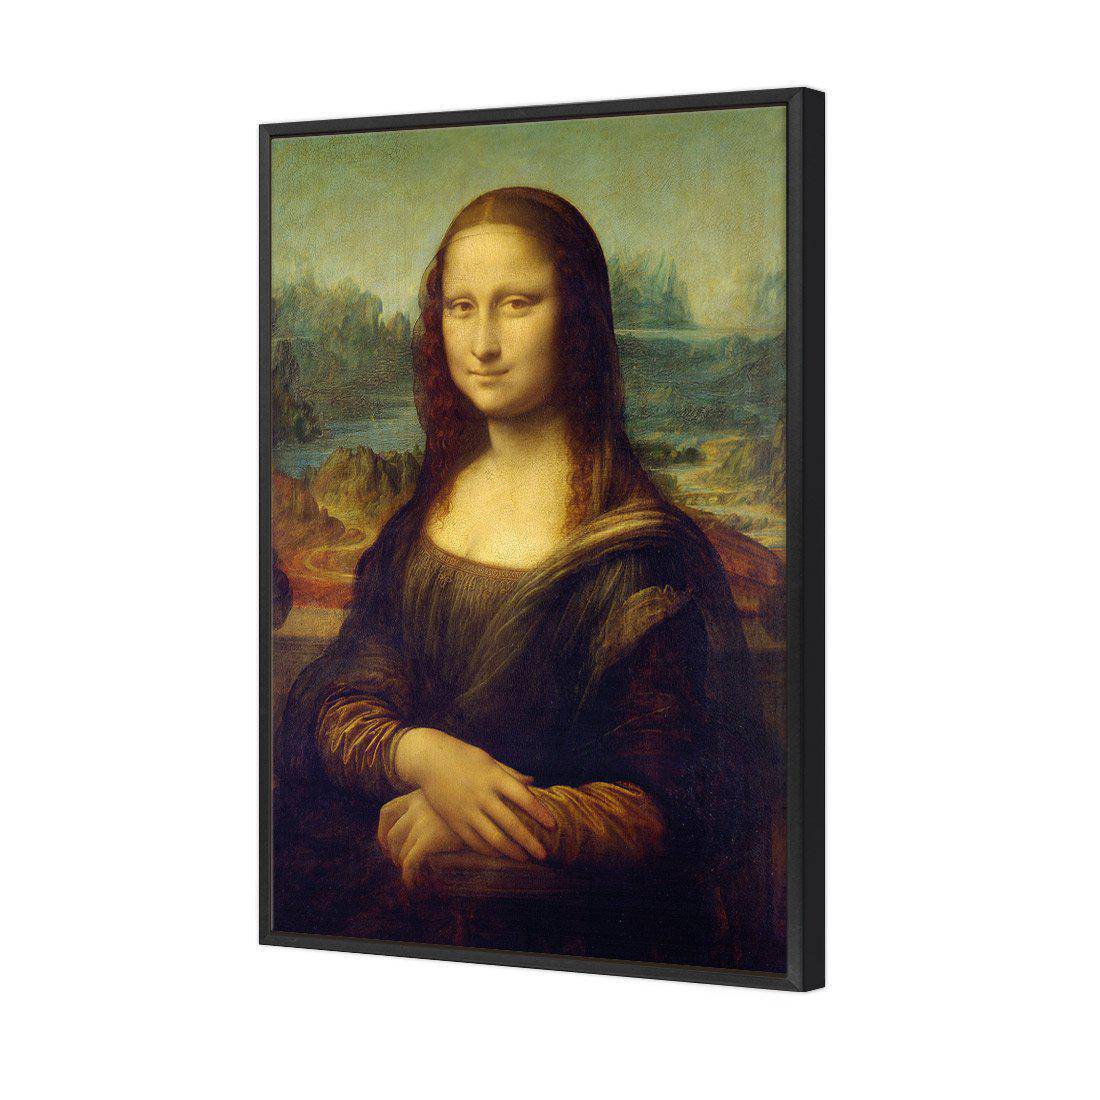 Mona Lisa - Da Vinci Canvas Art-Canvas-Wall Art Designs-45x30cm-Canvas - Black Frame-Wall Art Designs